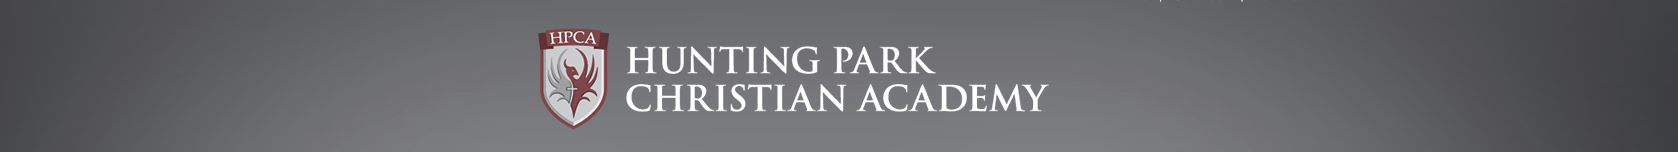 Hunting Park Christian Academy